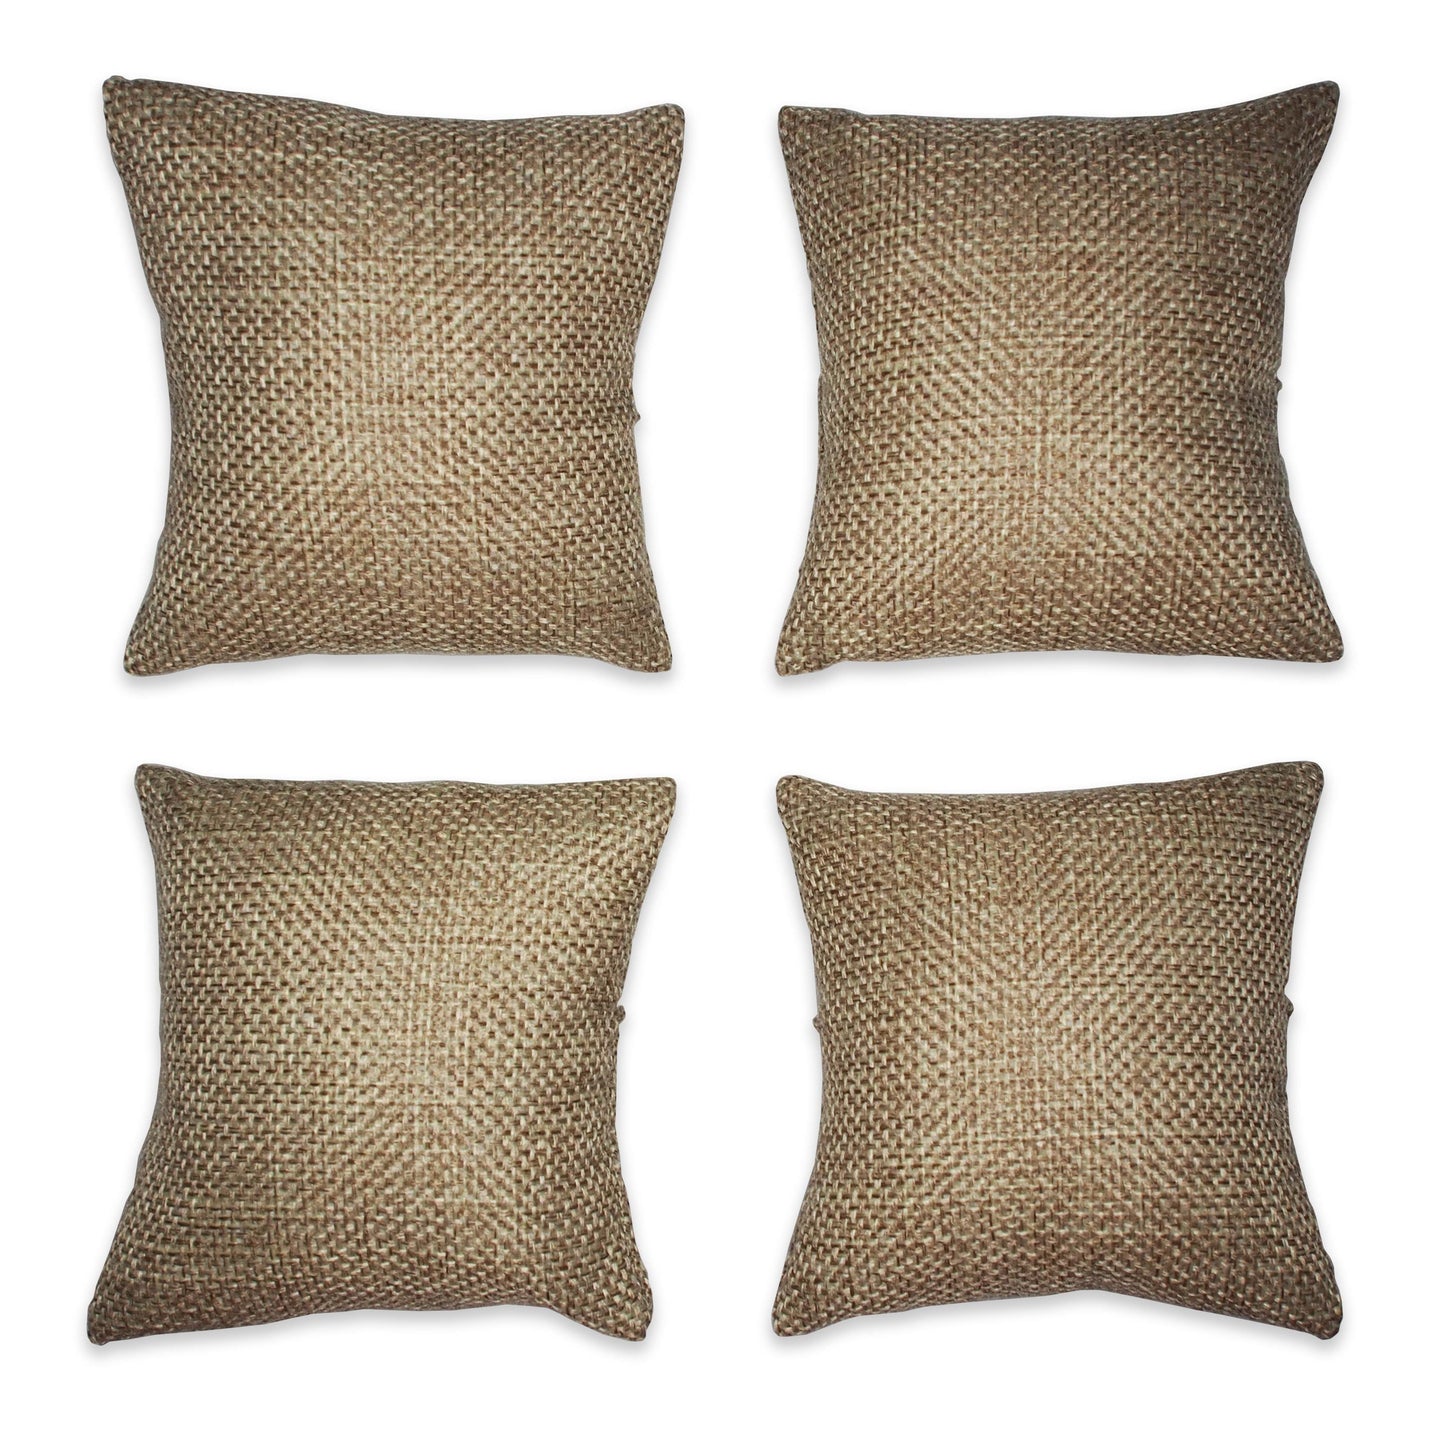 3" Burlap Fabric Pillow Displays